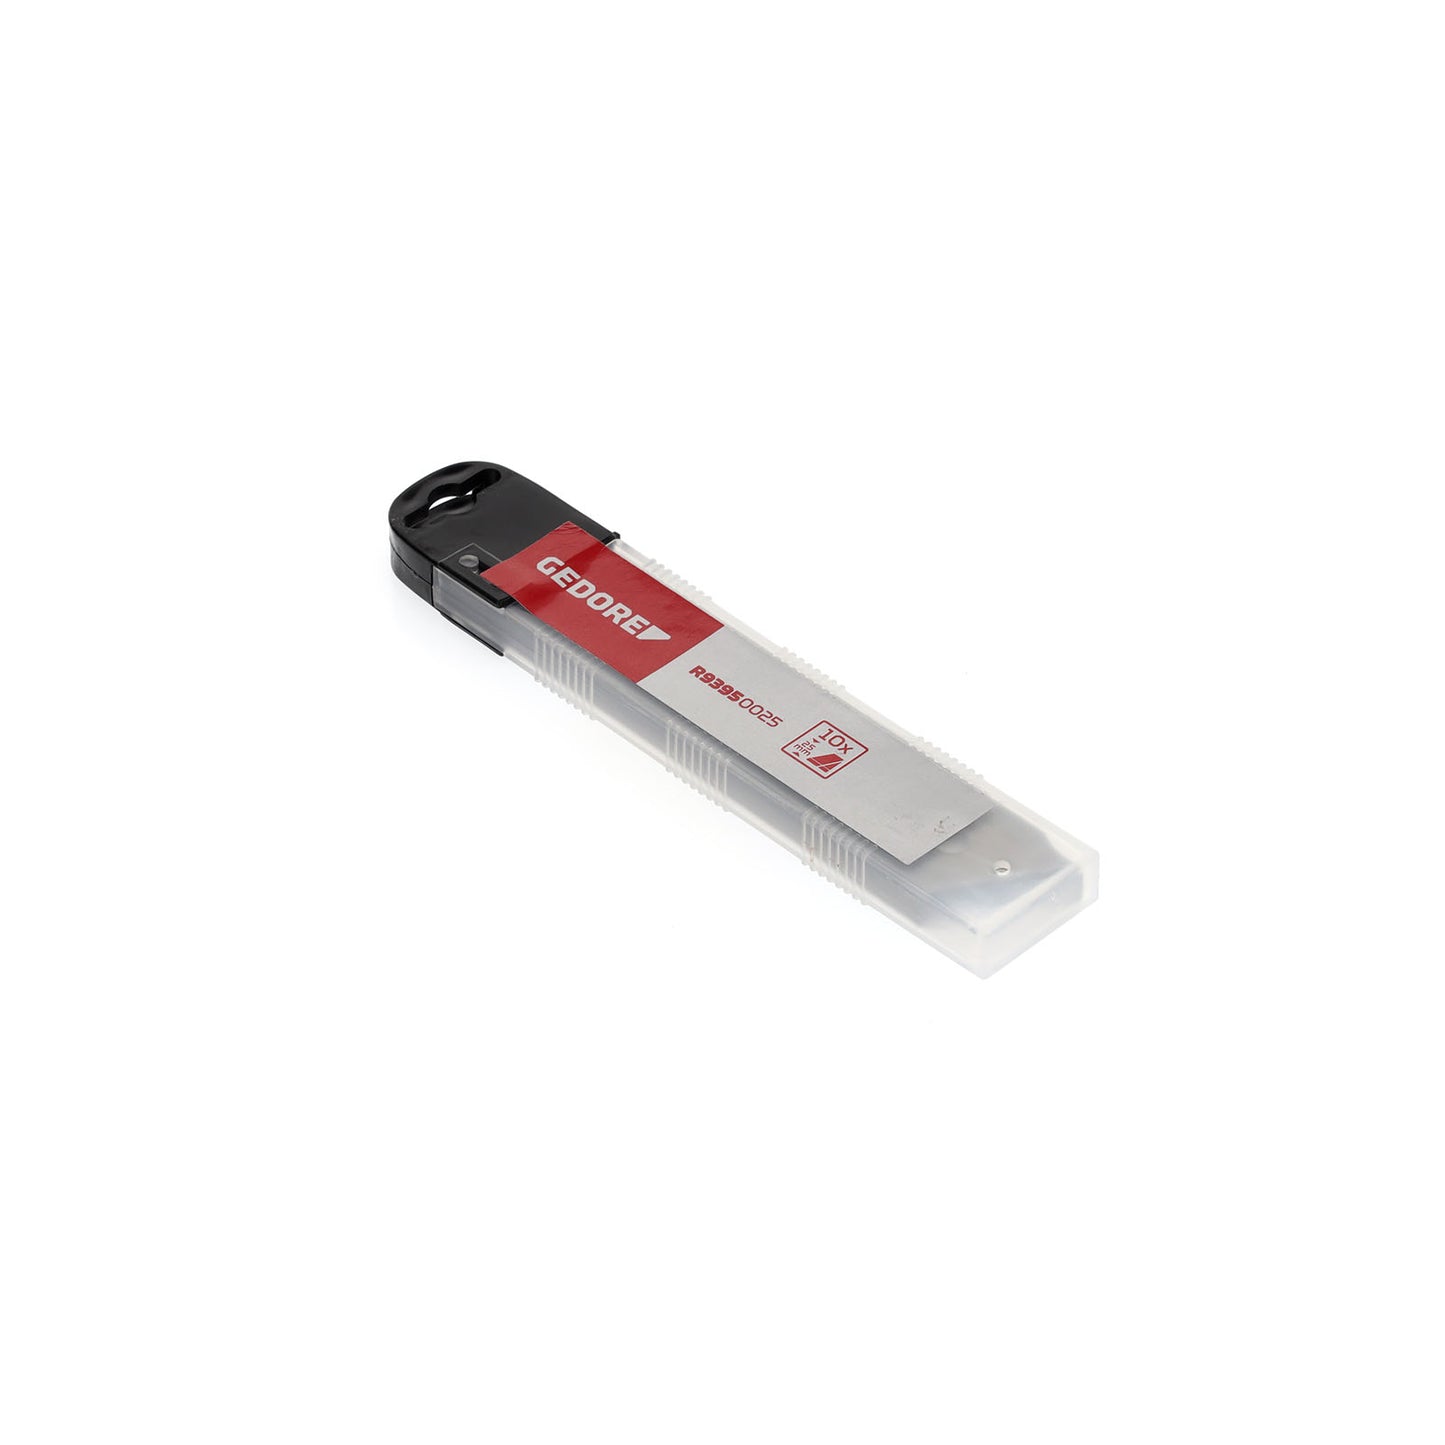 GEDORE red R93950025 - Cuchillas de recambio, 25 mm de ancho, 10 piezas (3301606)